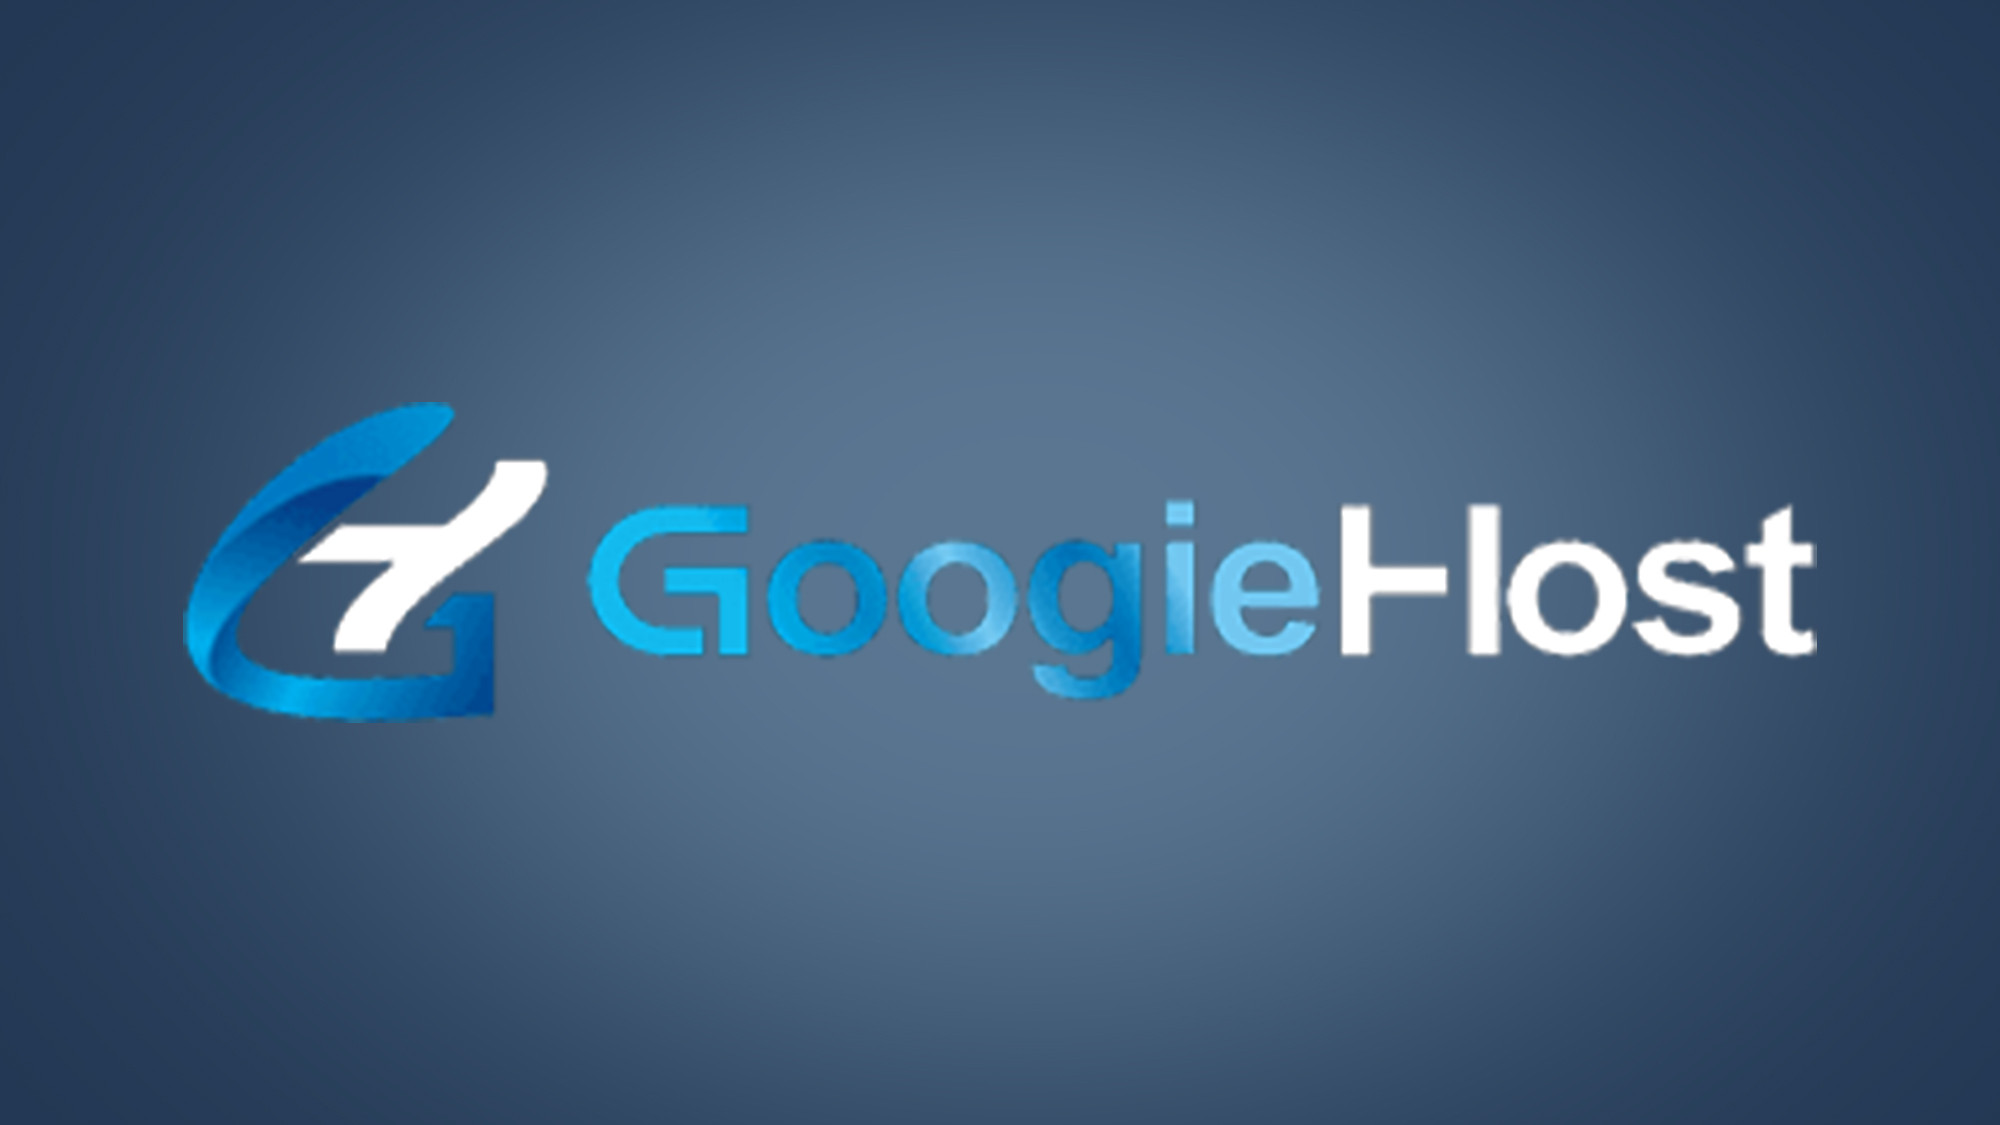 GoogieHost logo on dark blue logo